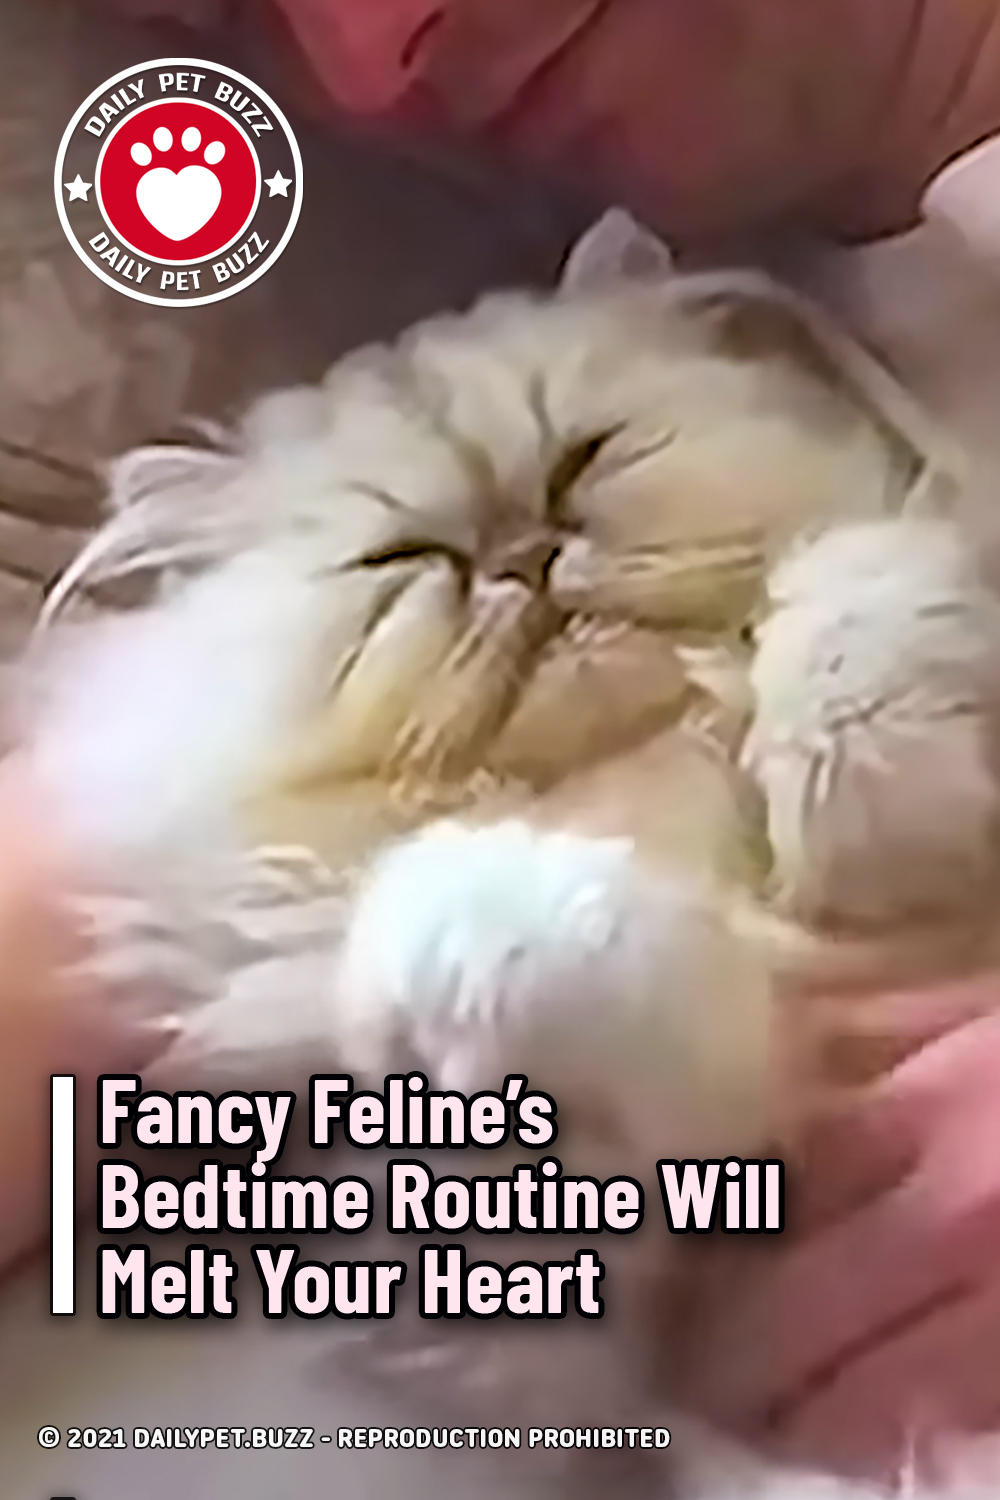 Fancy Feline’s Bedtime Routine Will Melt Your Heart